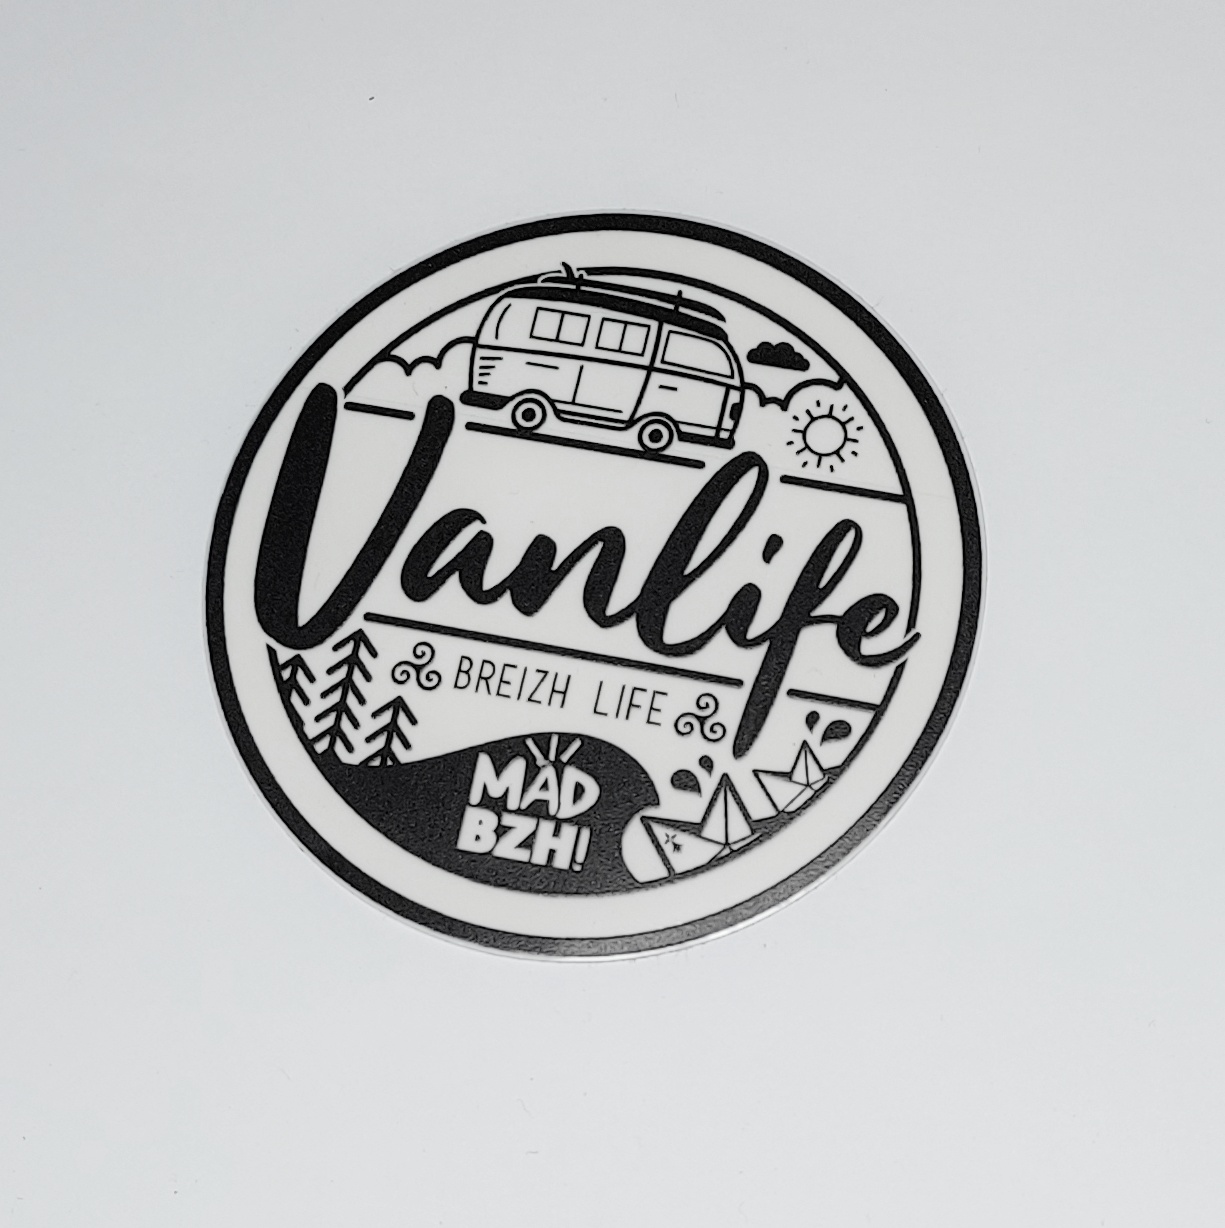 vous aimez la vanlife ? mad bzh vous propose un sticker specialement concu pourles vanlifers